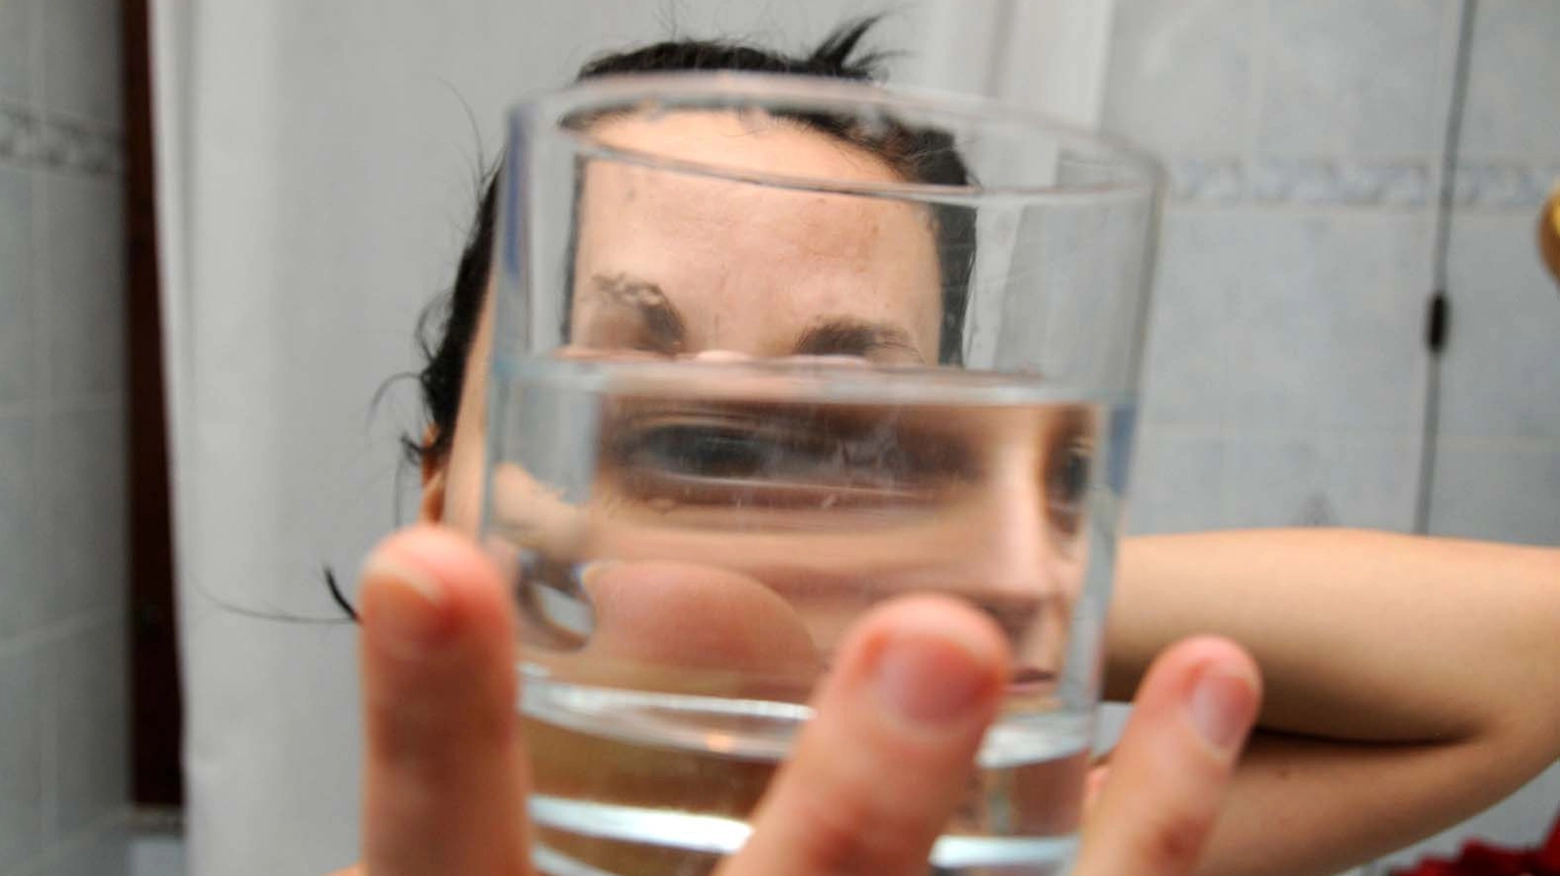 La giovane è stata costretta a bere acqua bollente (Foto d'archivio Fantini)